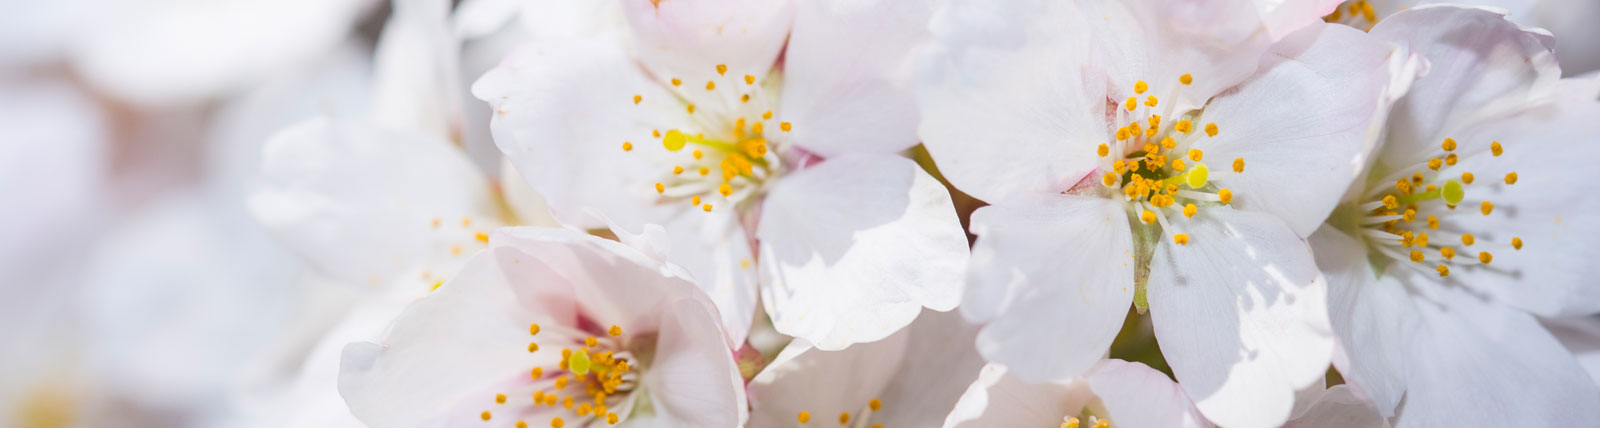 cherry blossom image